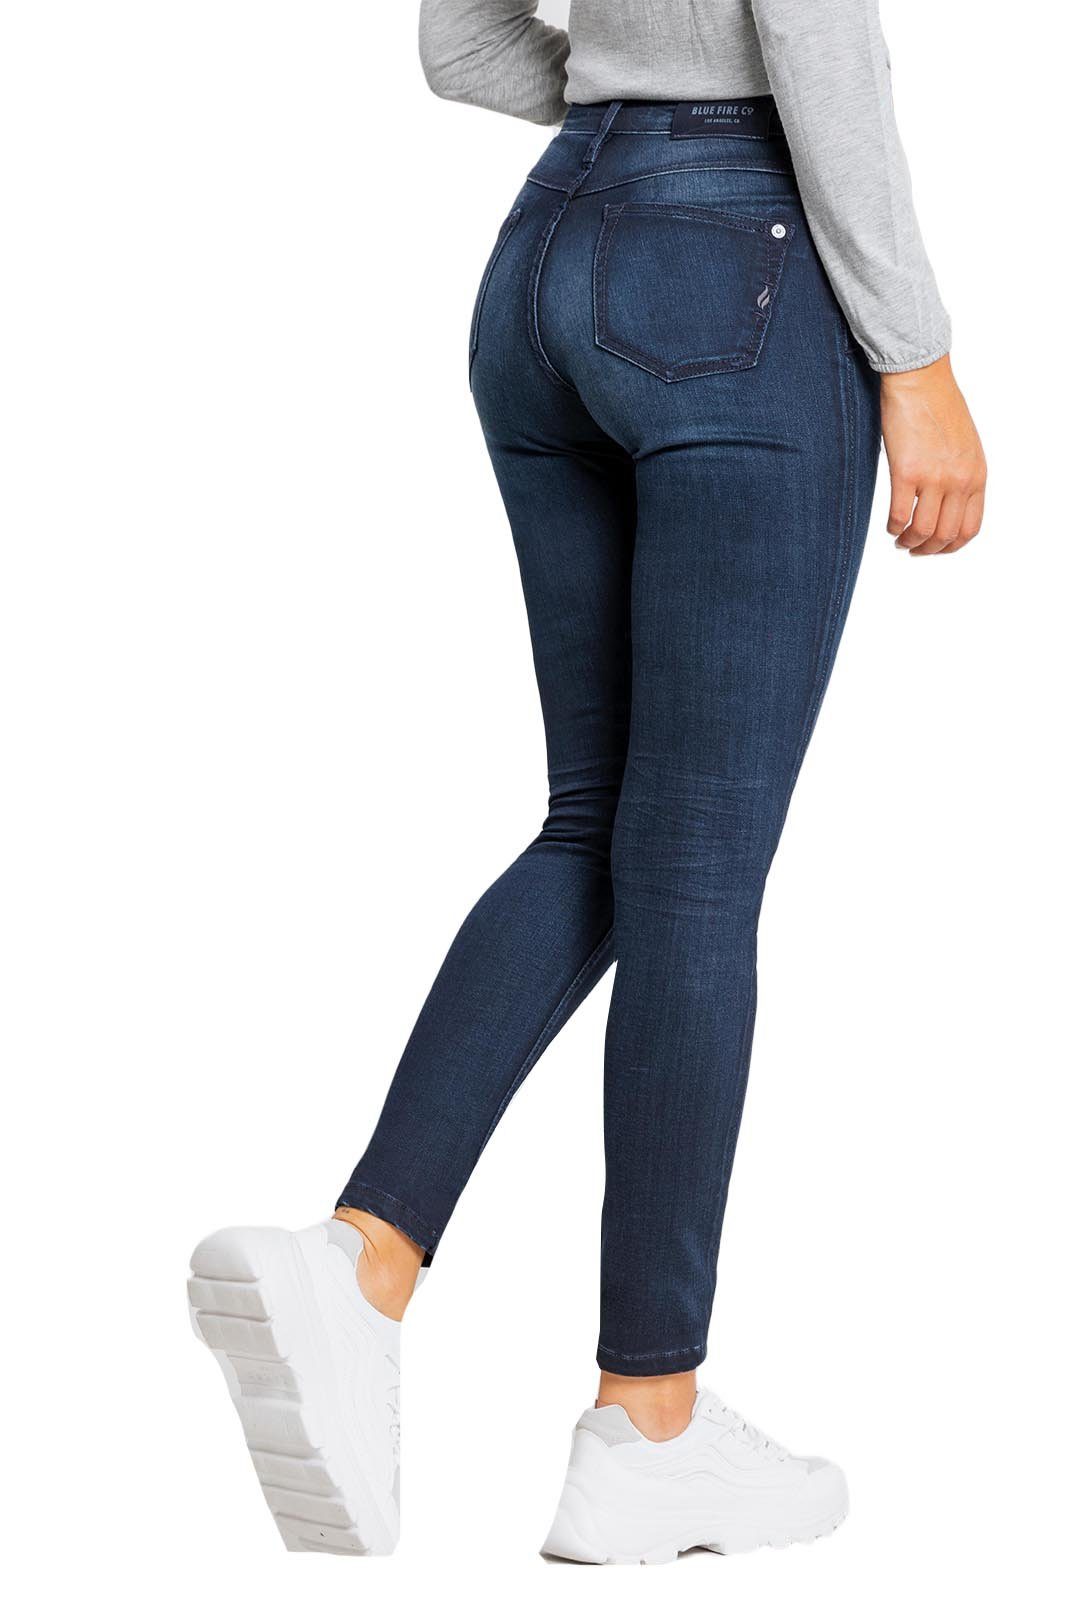 BLUE FIRE Jeans mit stylishem High-Waist-Schnitt »Lara« online kaufen | OTTO